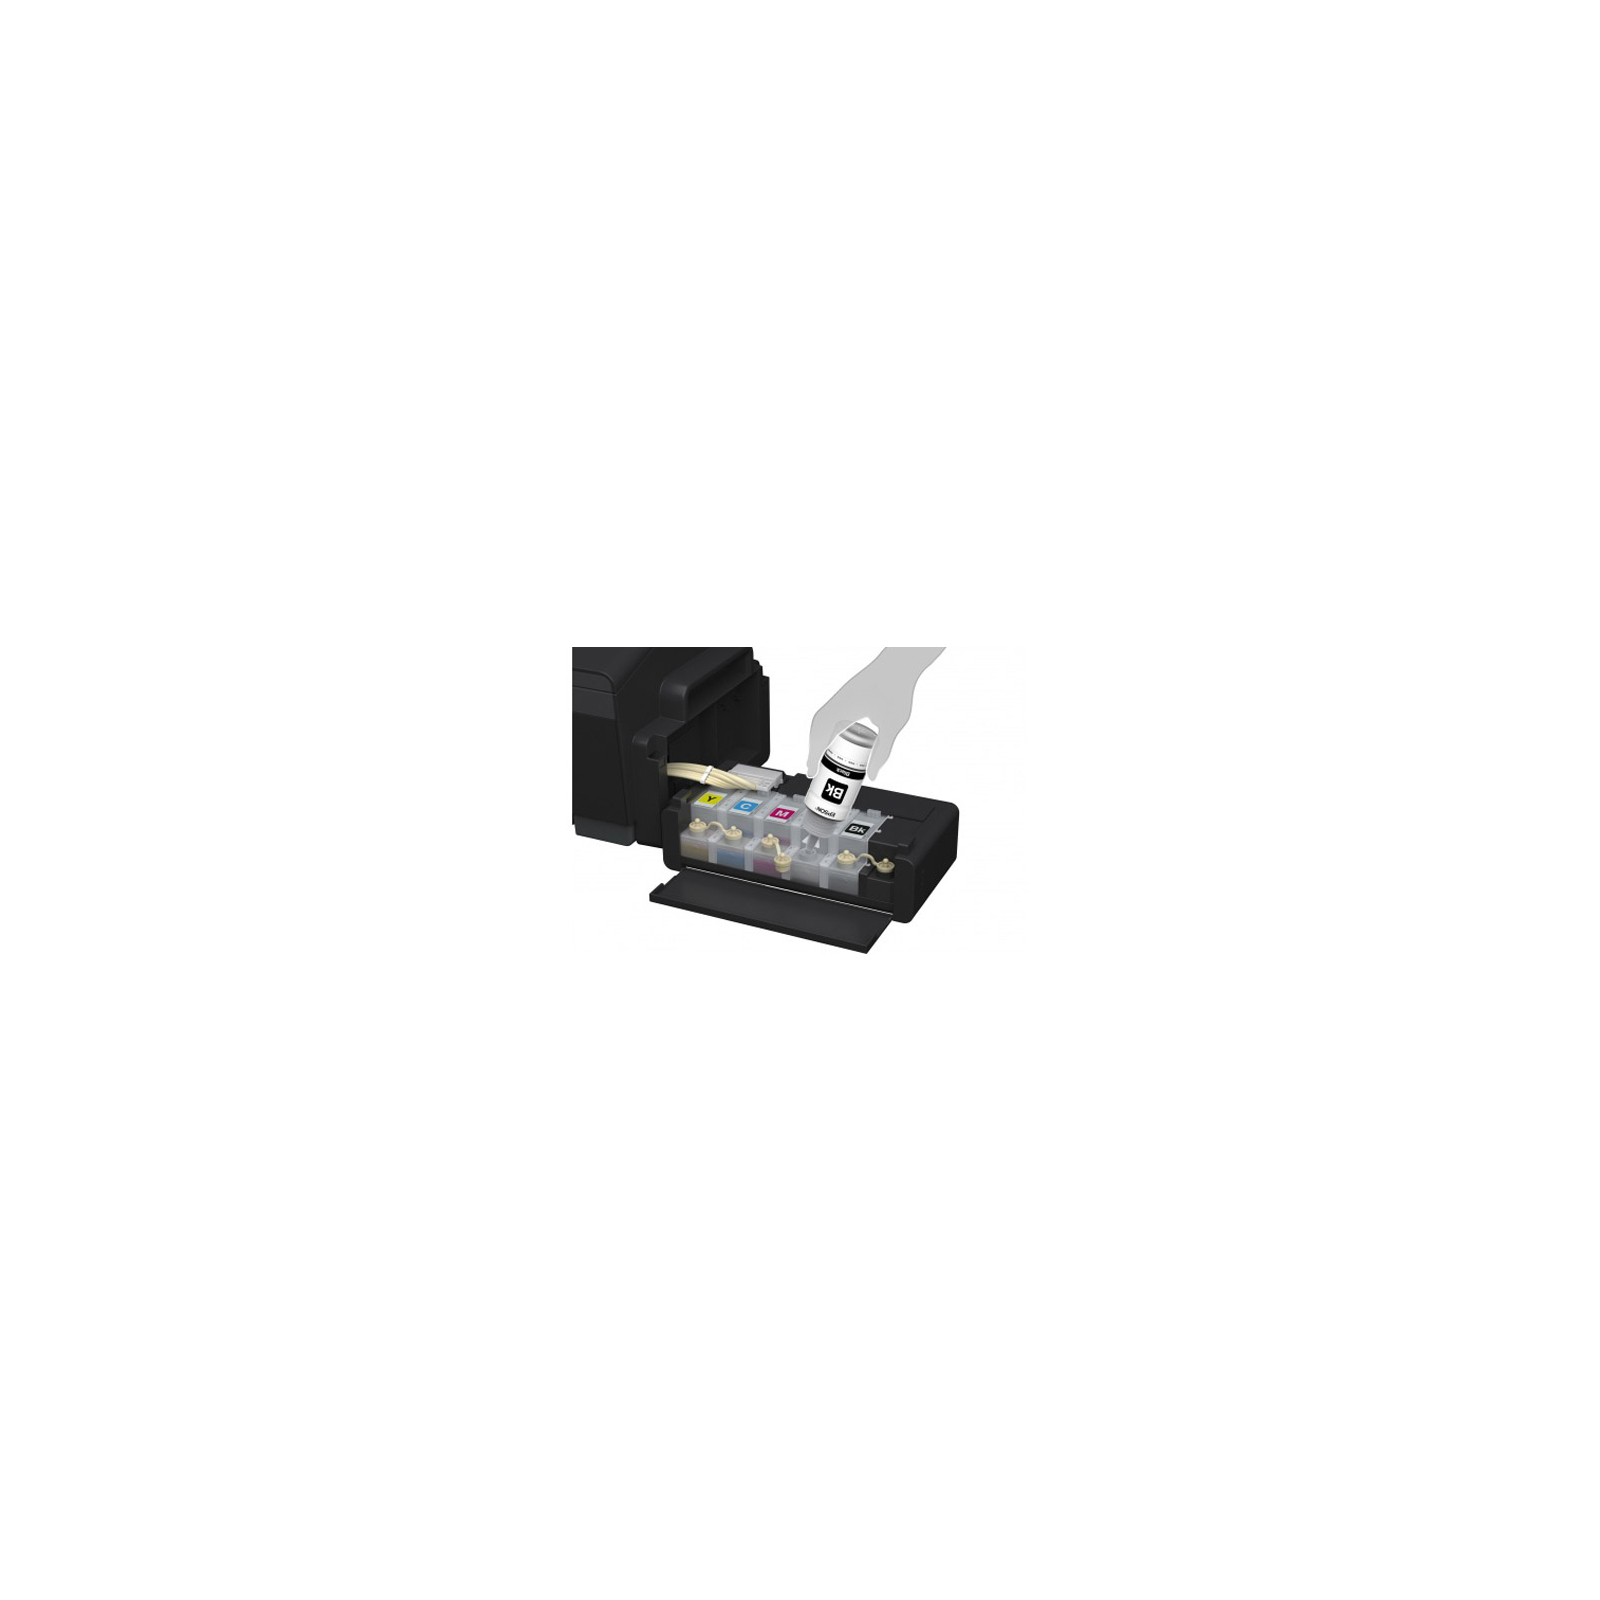 Струменевий принтер Epson L1300 (C11CD81402) зображення 6